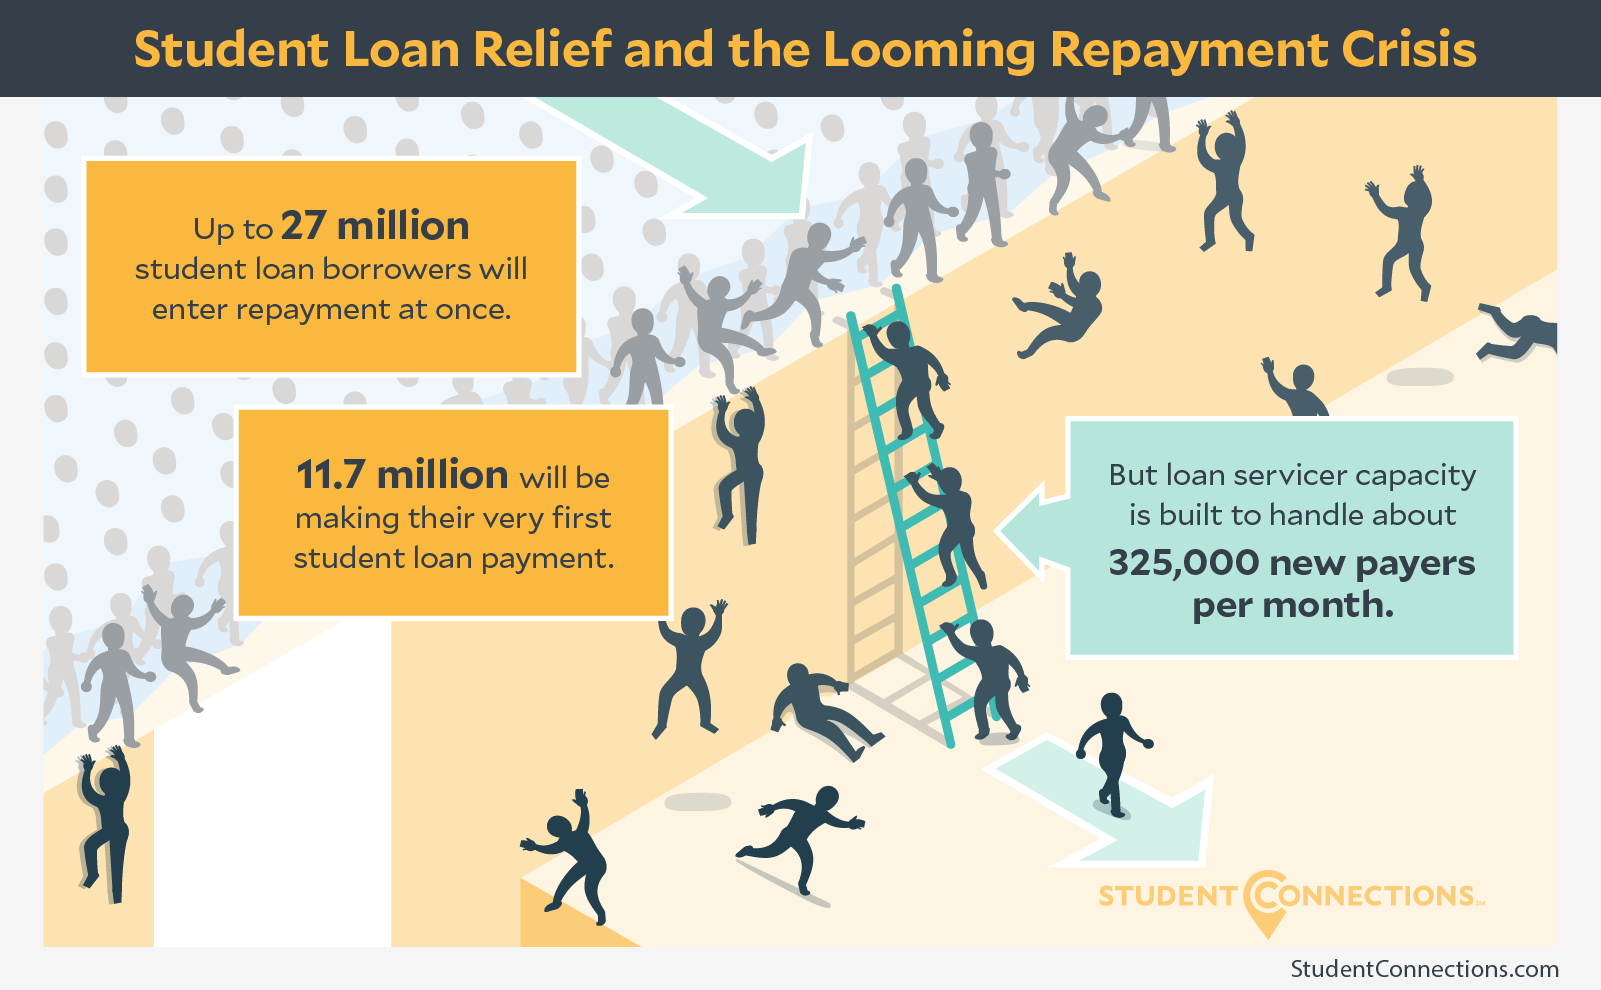 Repayment relief requirements